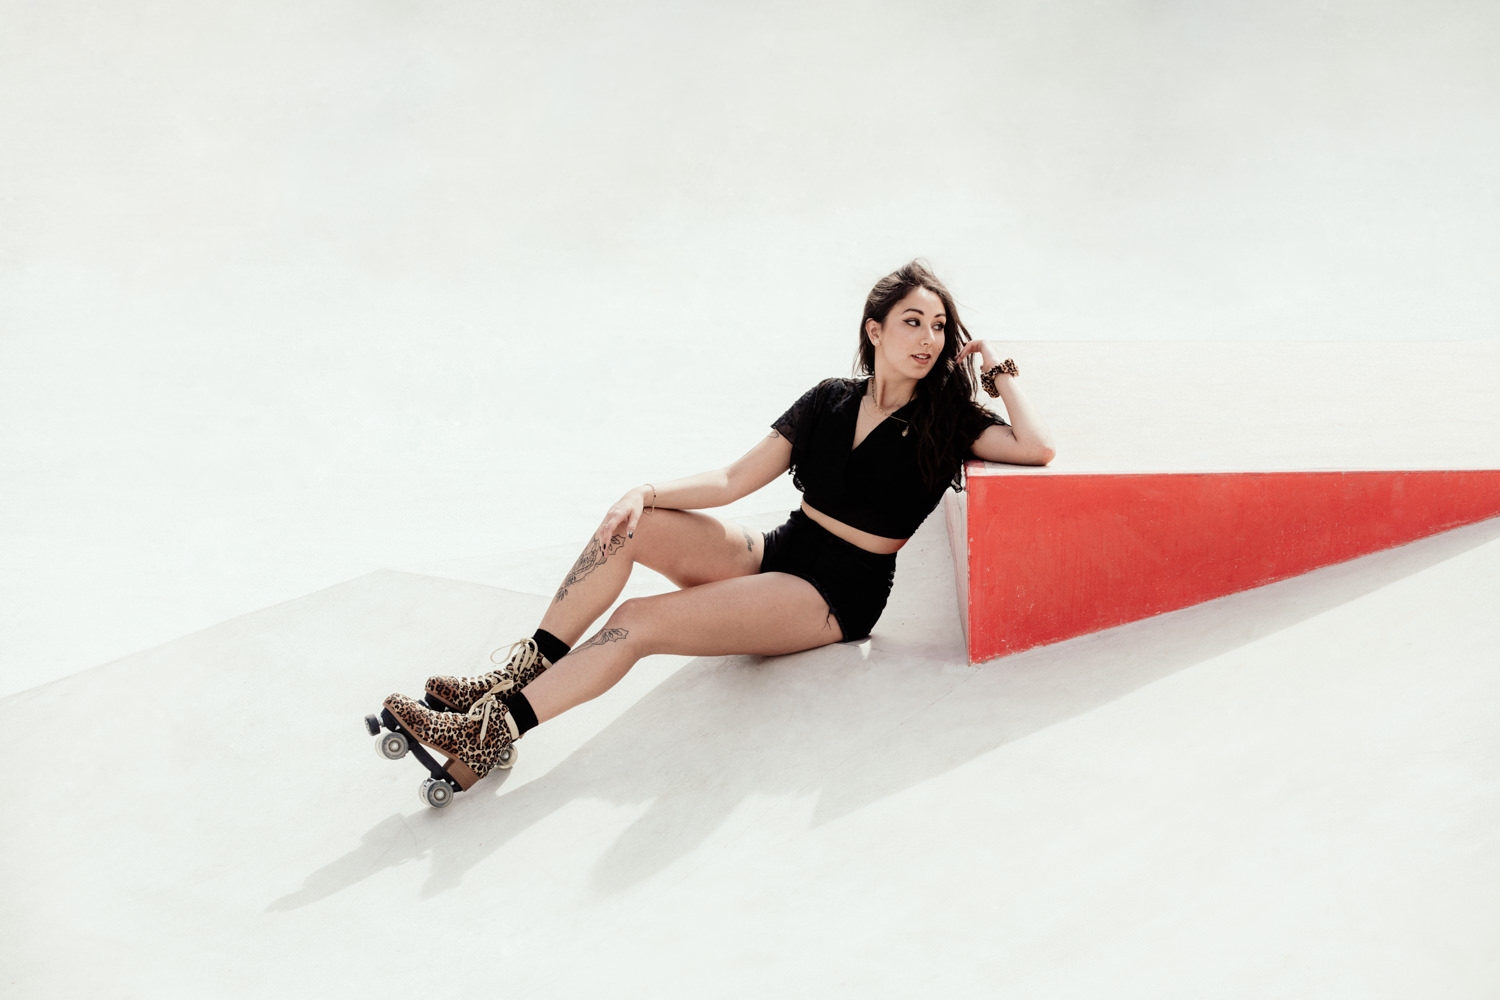 Photographe portrait femme patin à roulettes Roces